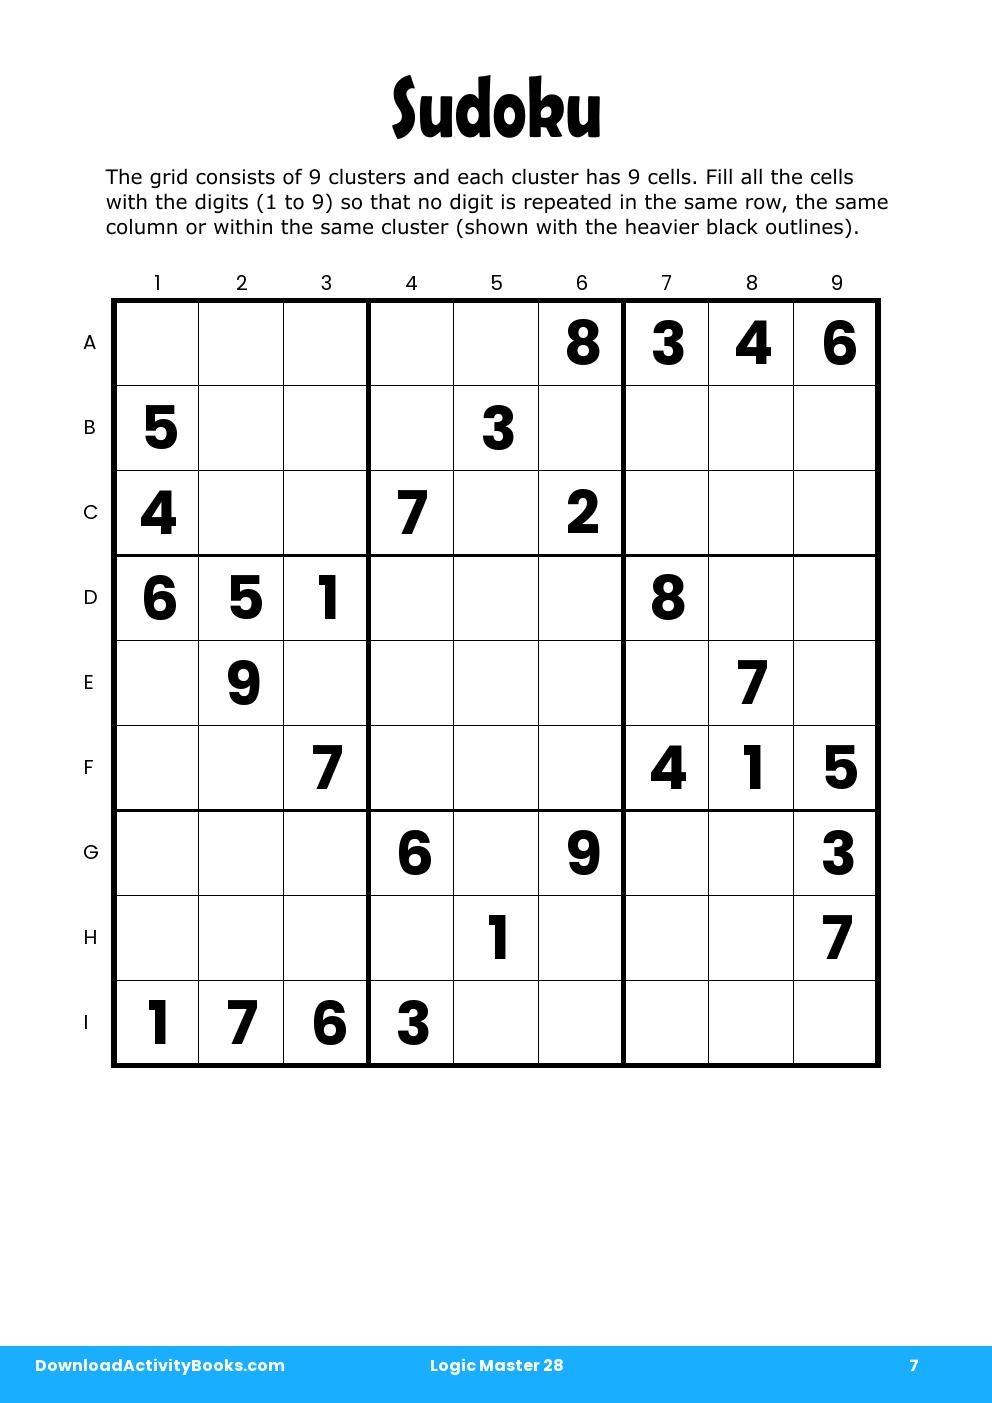 Sudoku in Logic Master 28